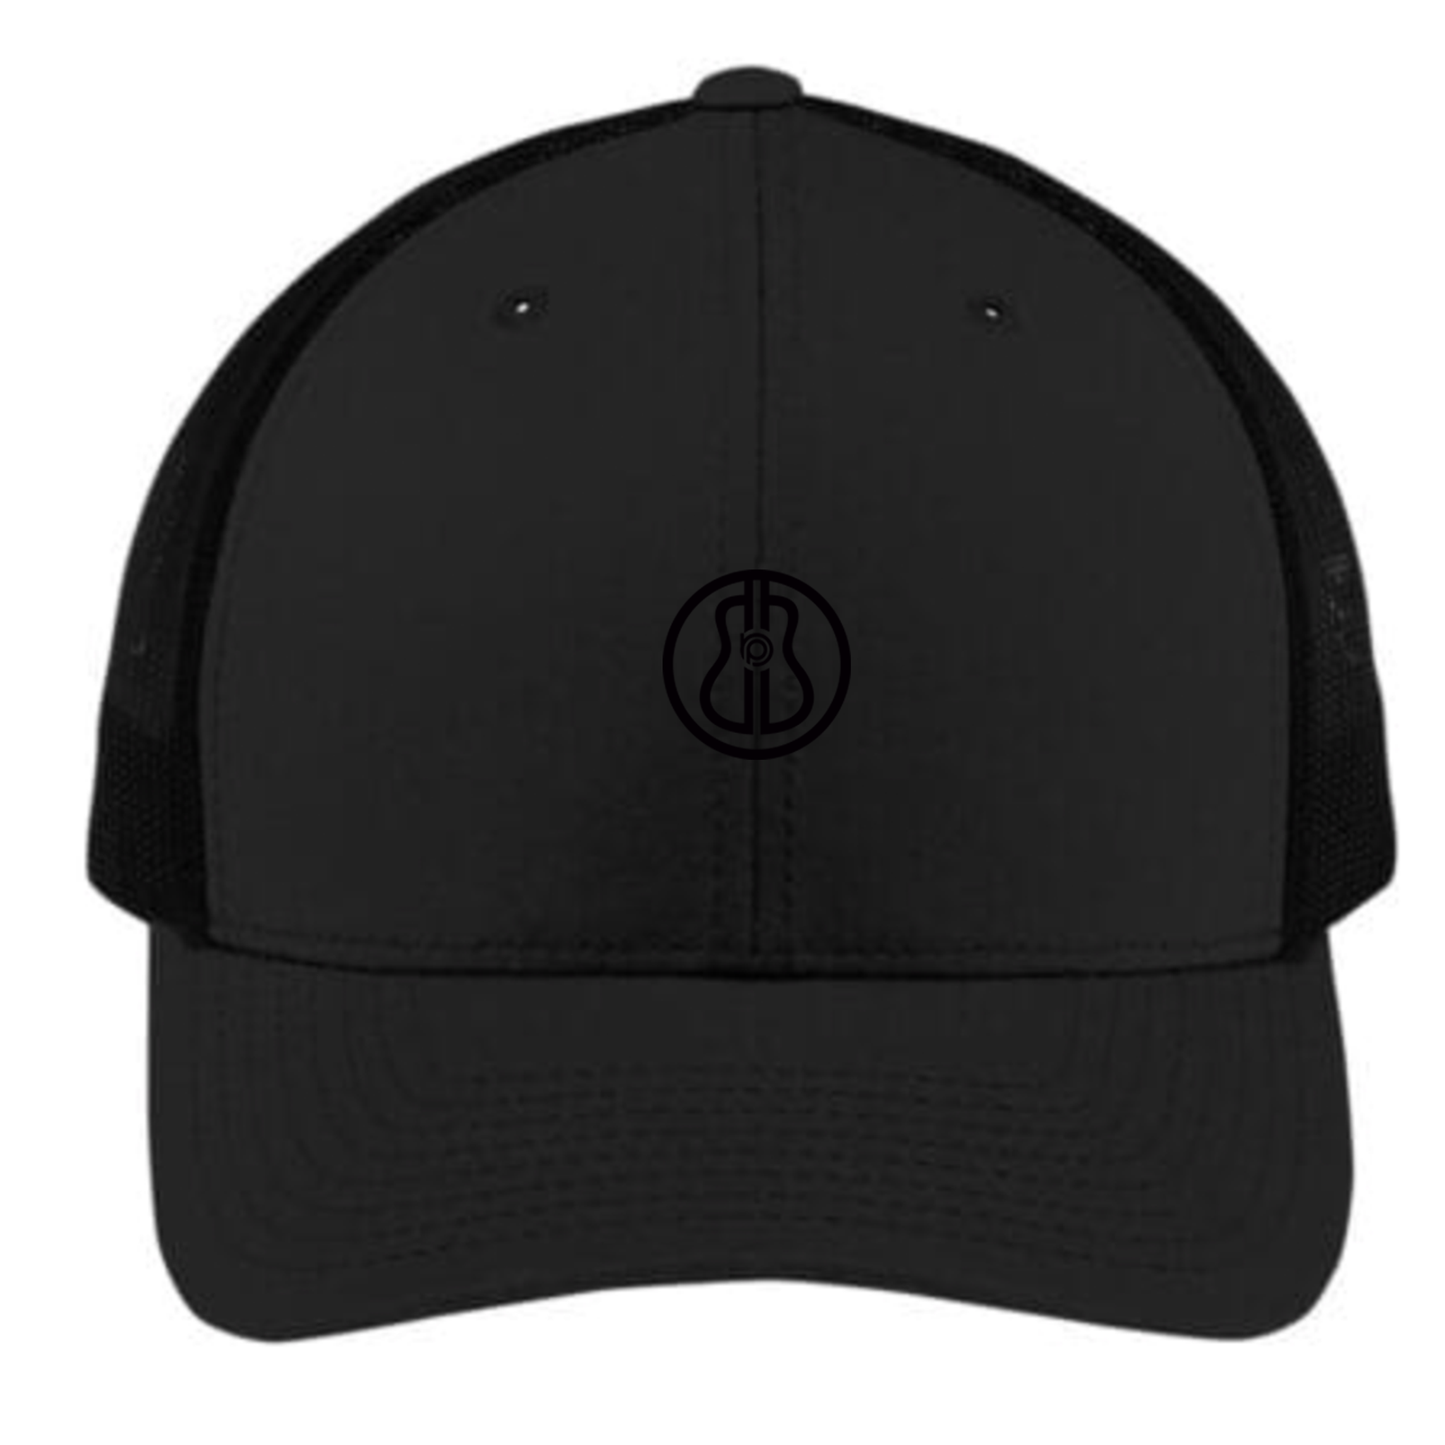 BP Structured Trucker Hat